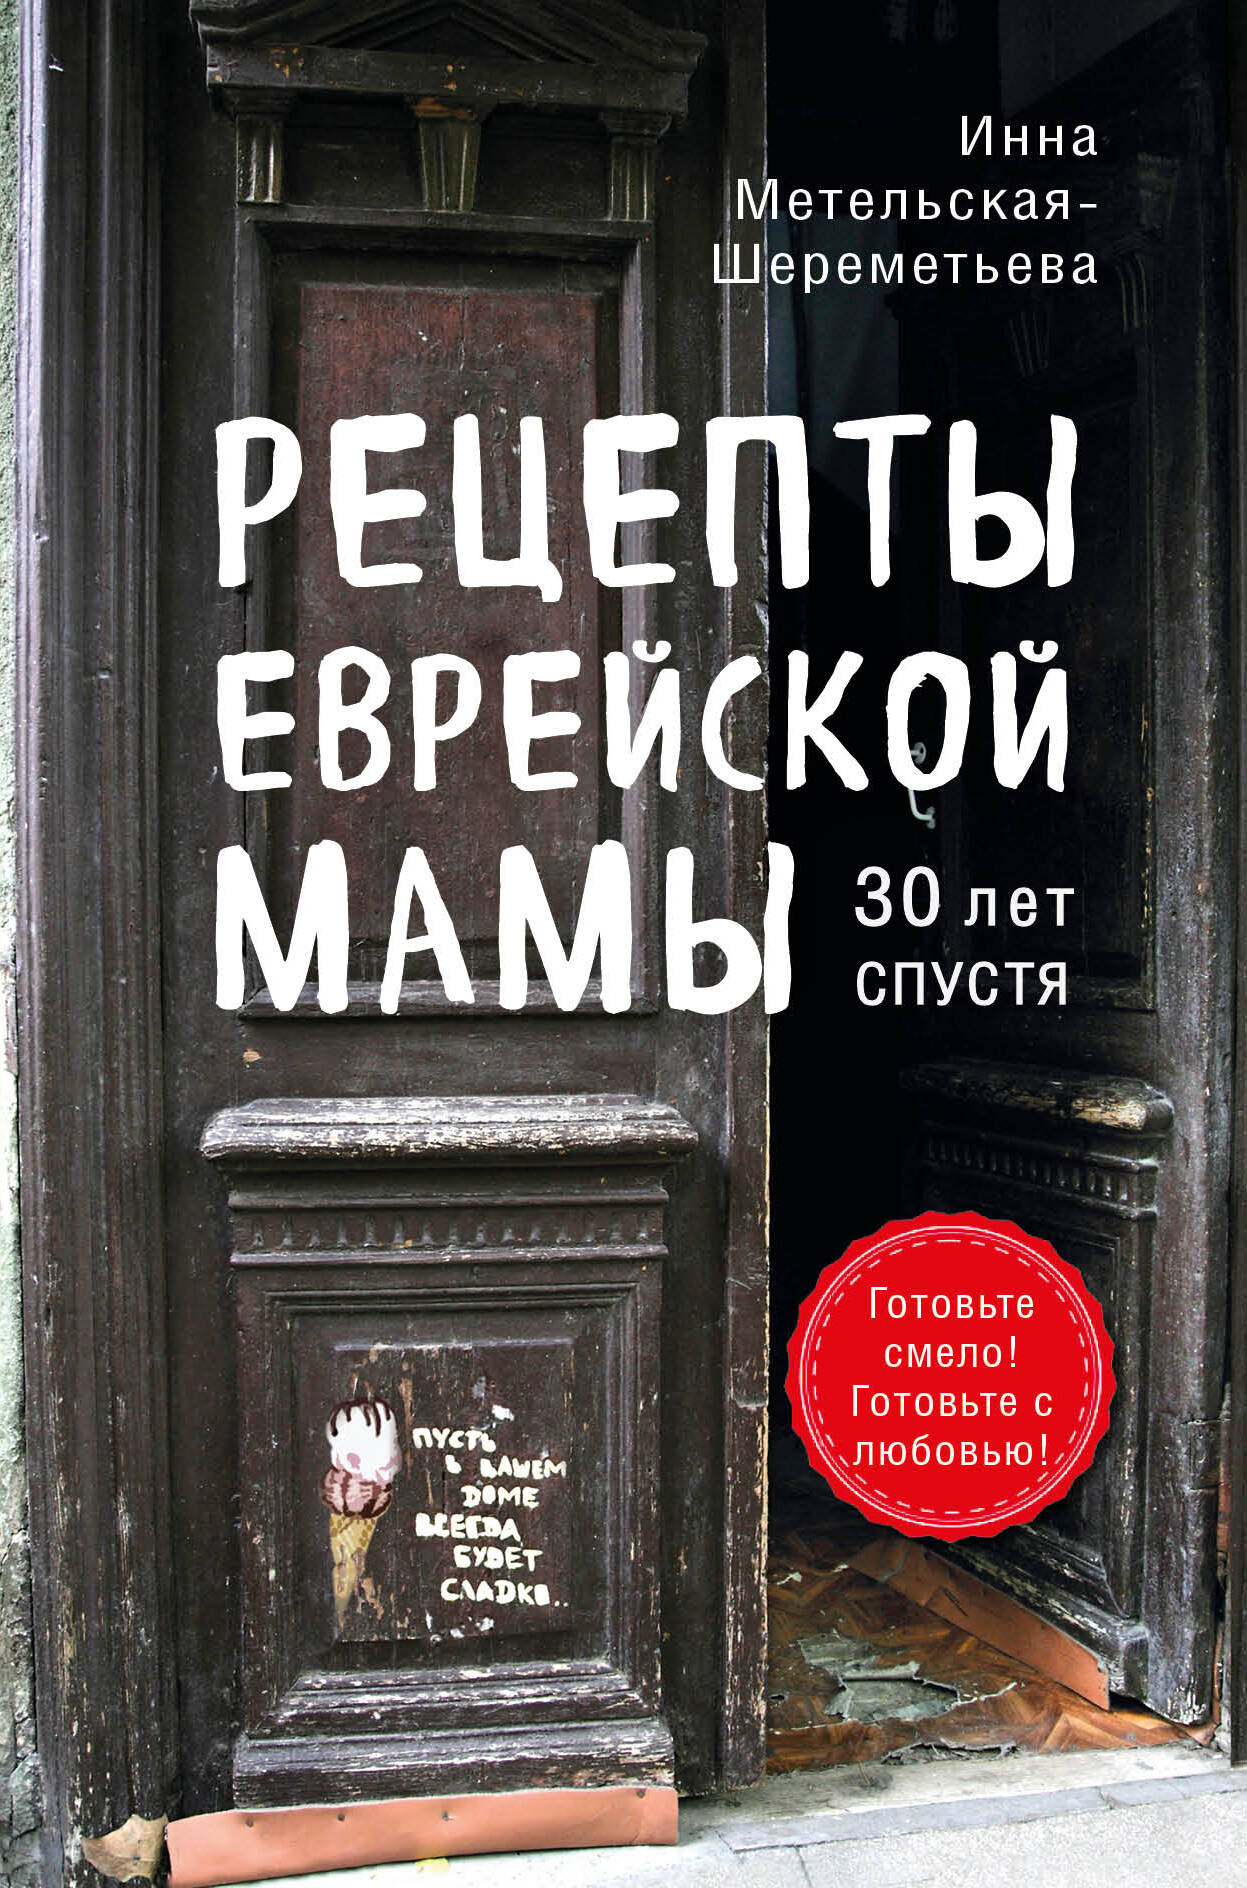 Метельская-Шереметьева Инна Рецепты еврейской мамы. 30 лет спустя